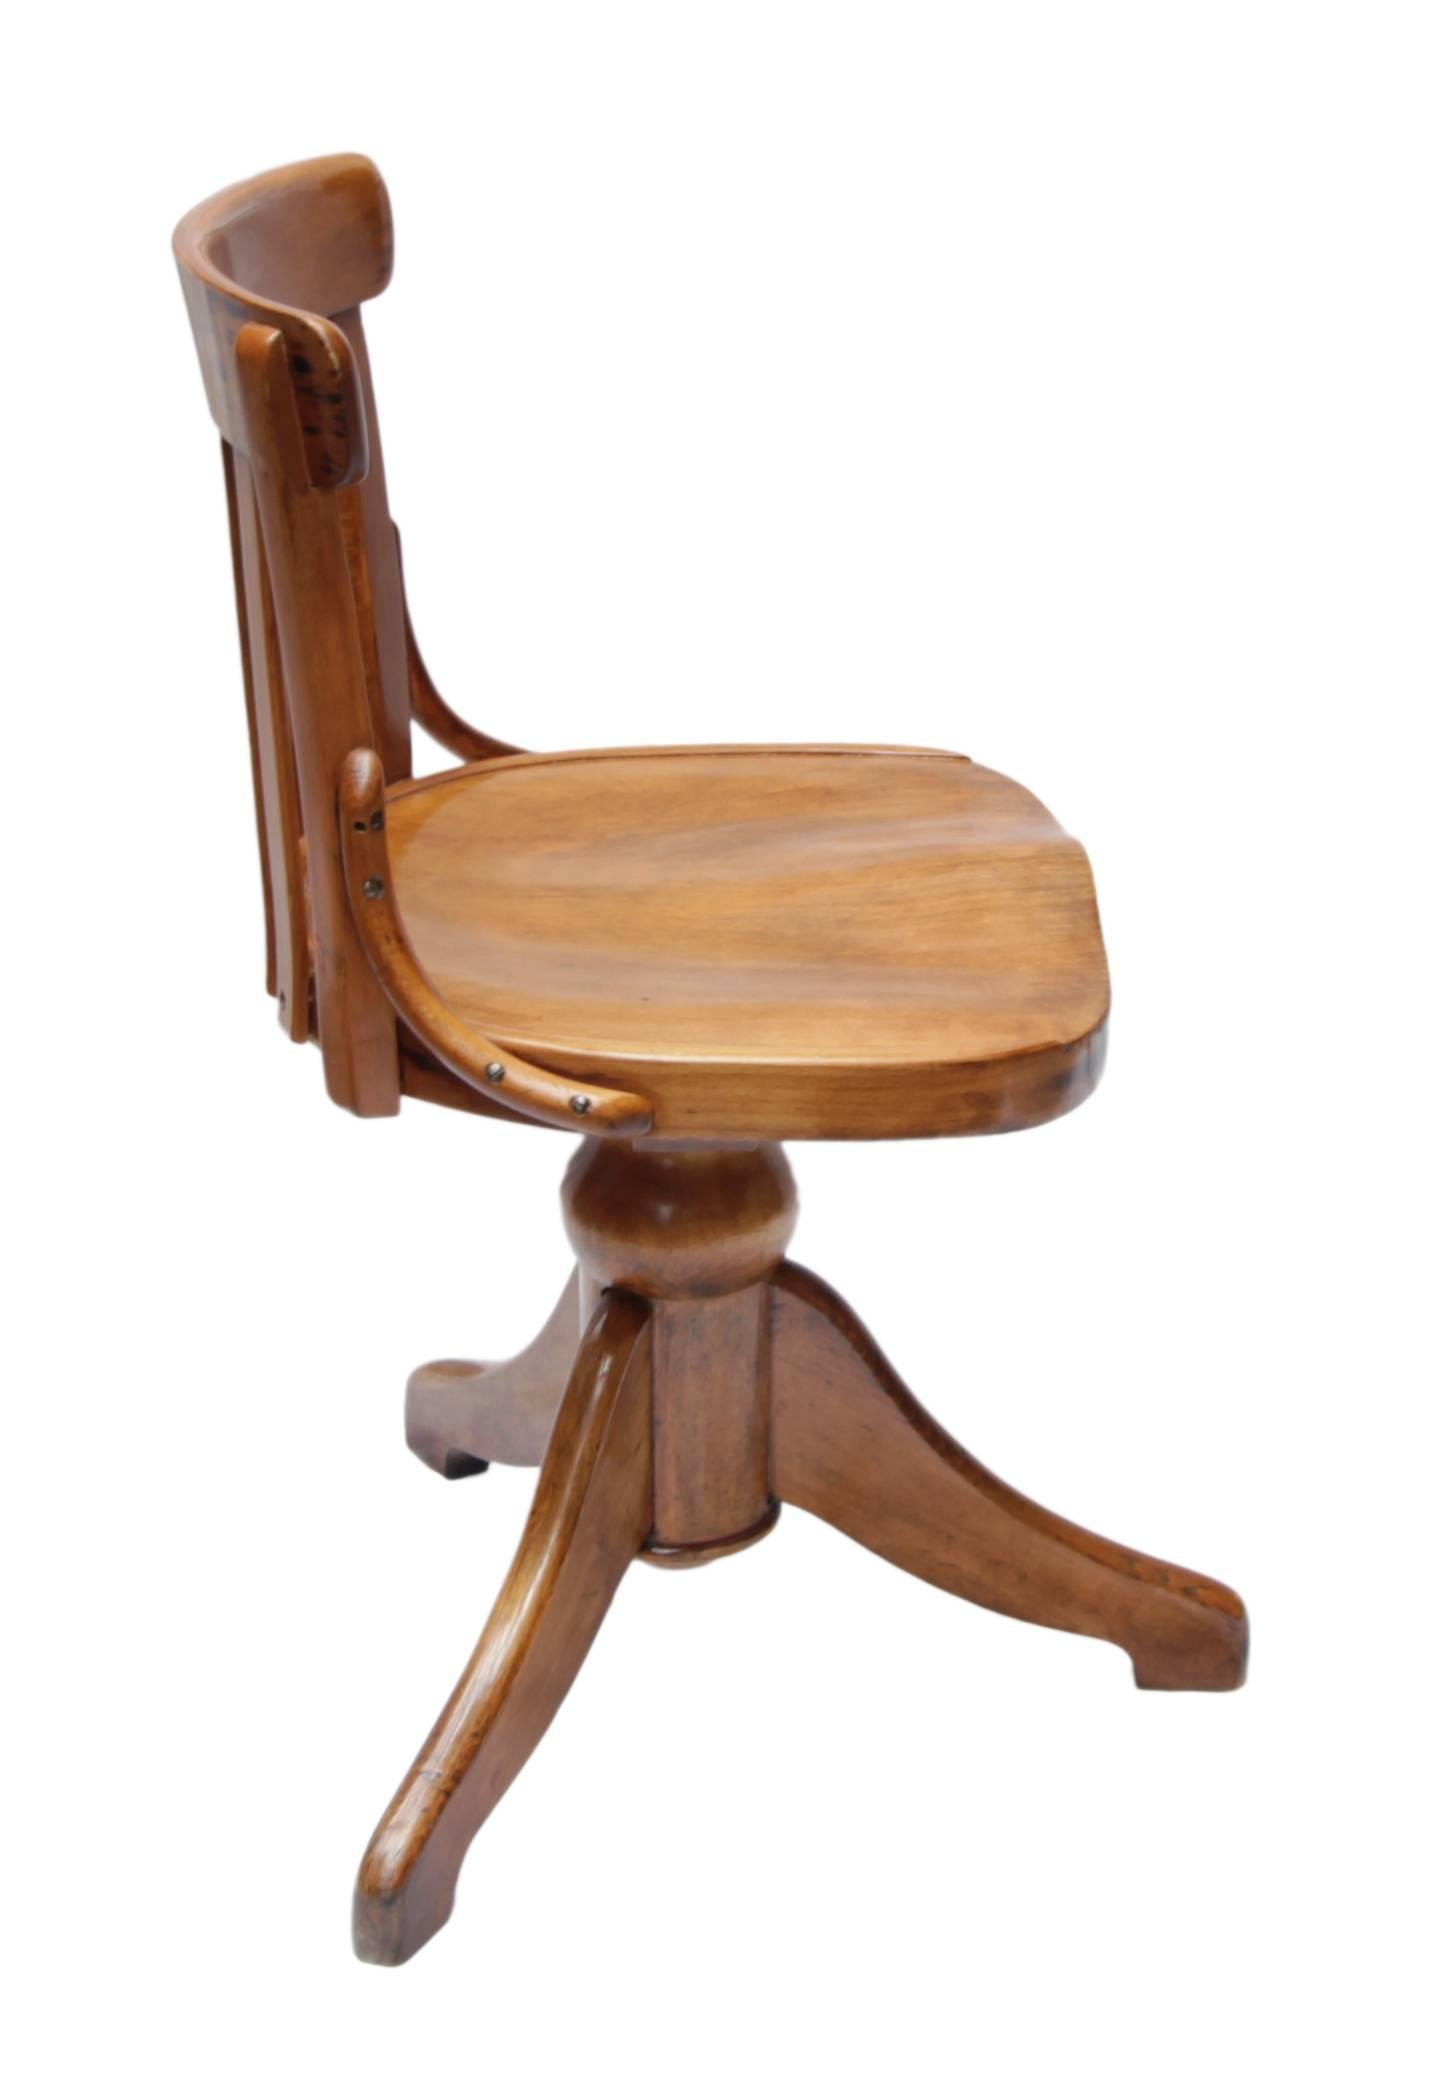 Der Stuhl aus der Zeit des Jugendstils ist nach oben und unten zu drehen. Der Stuhl ist aus massivem Buchenholz gefertigt und in gutem, restauriertem Zustand.